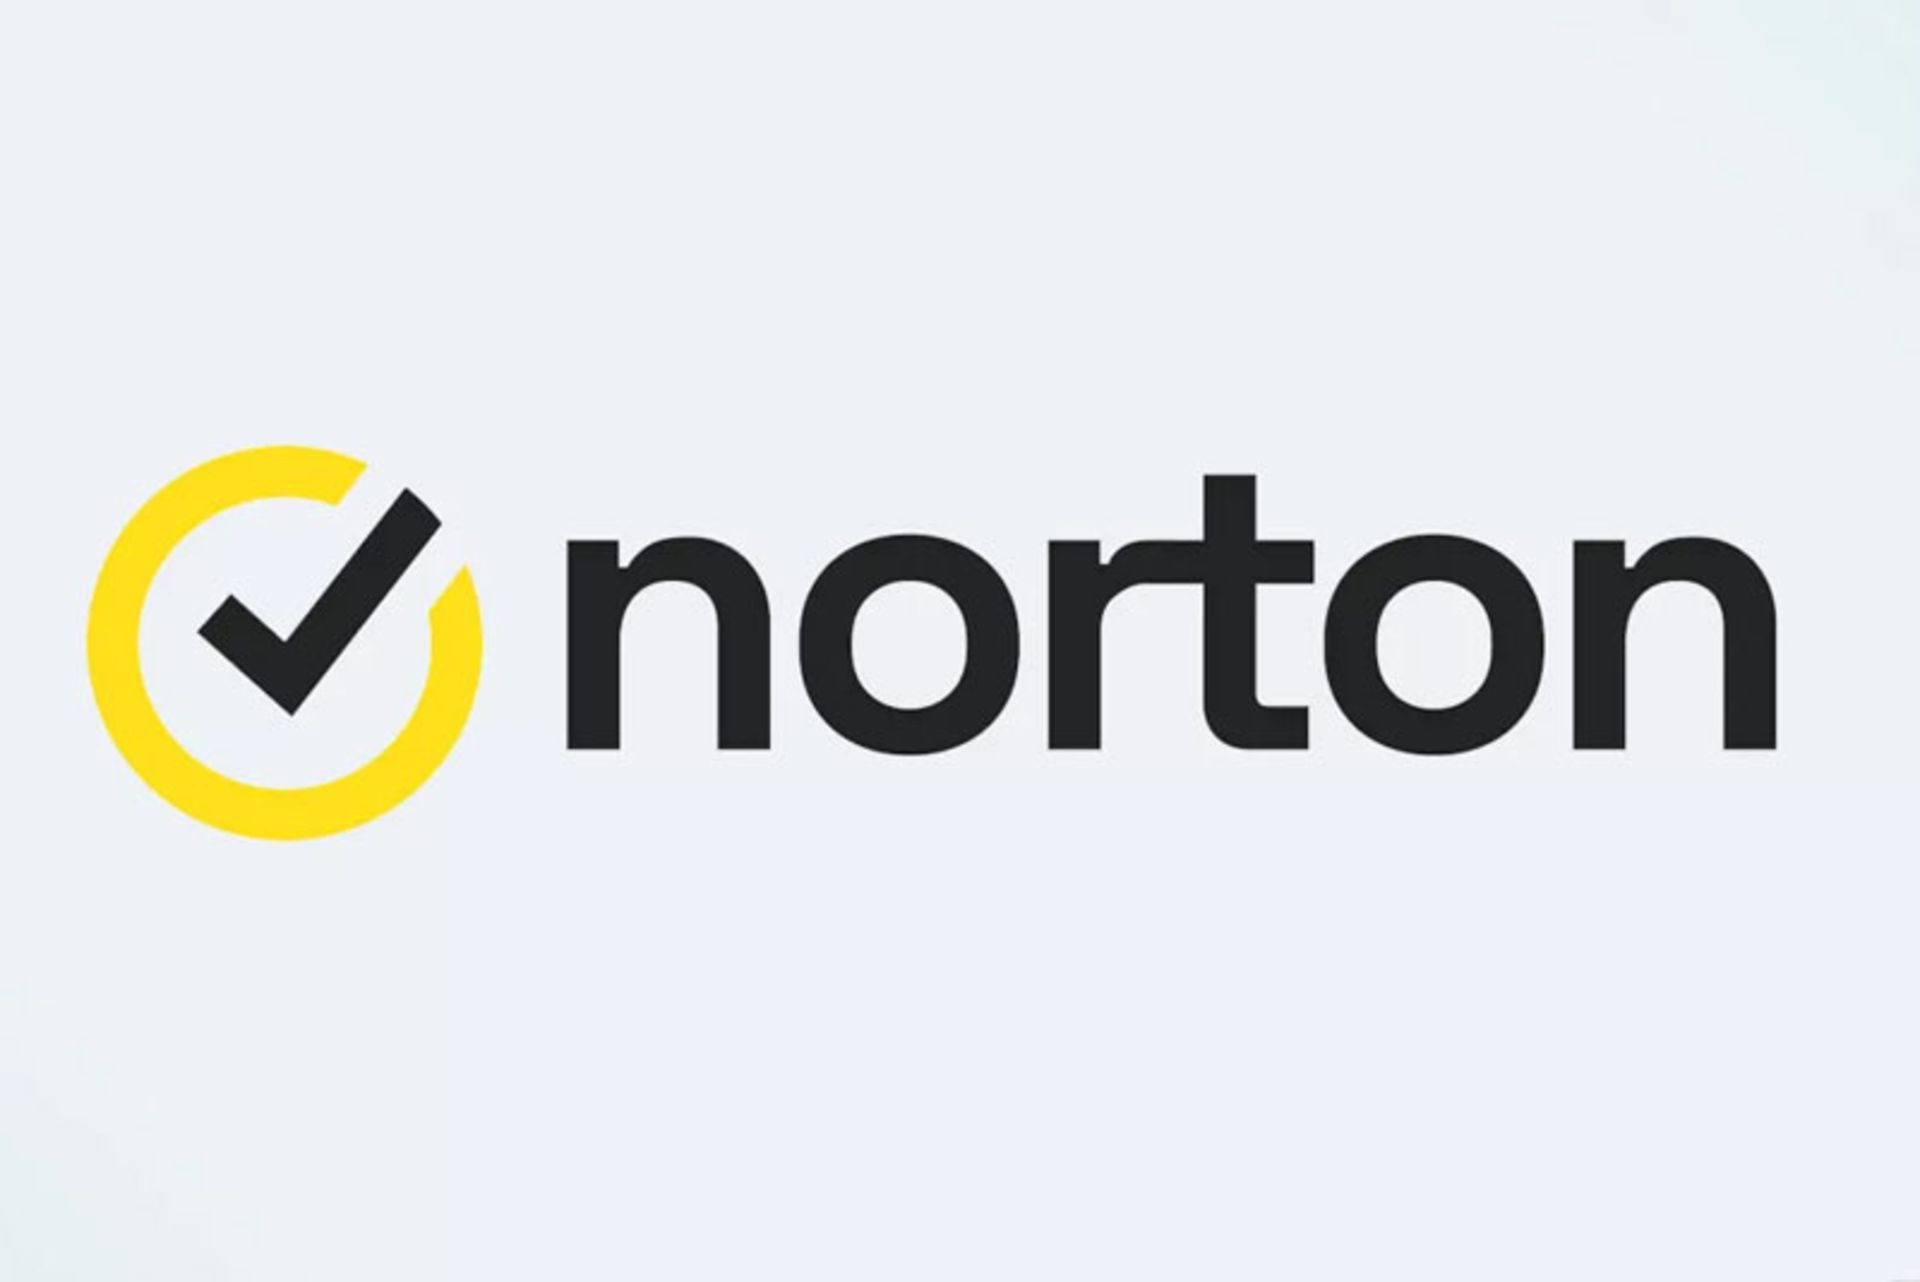 Norton 360 application logo